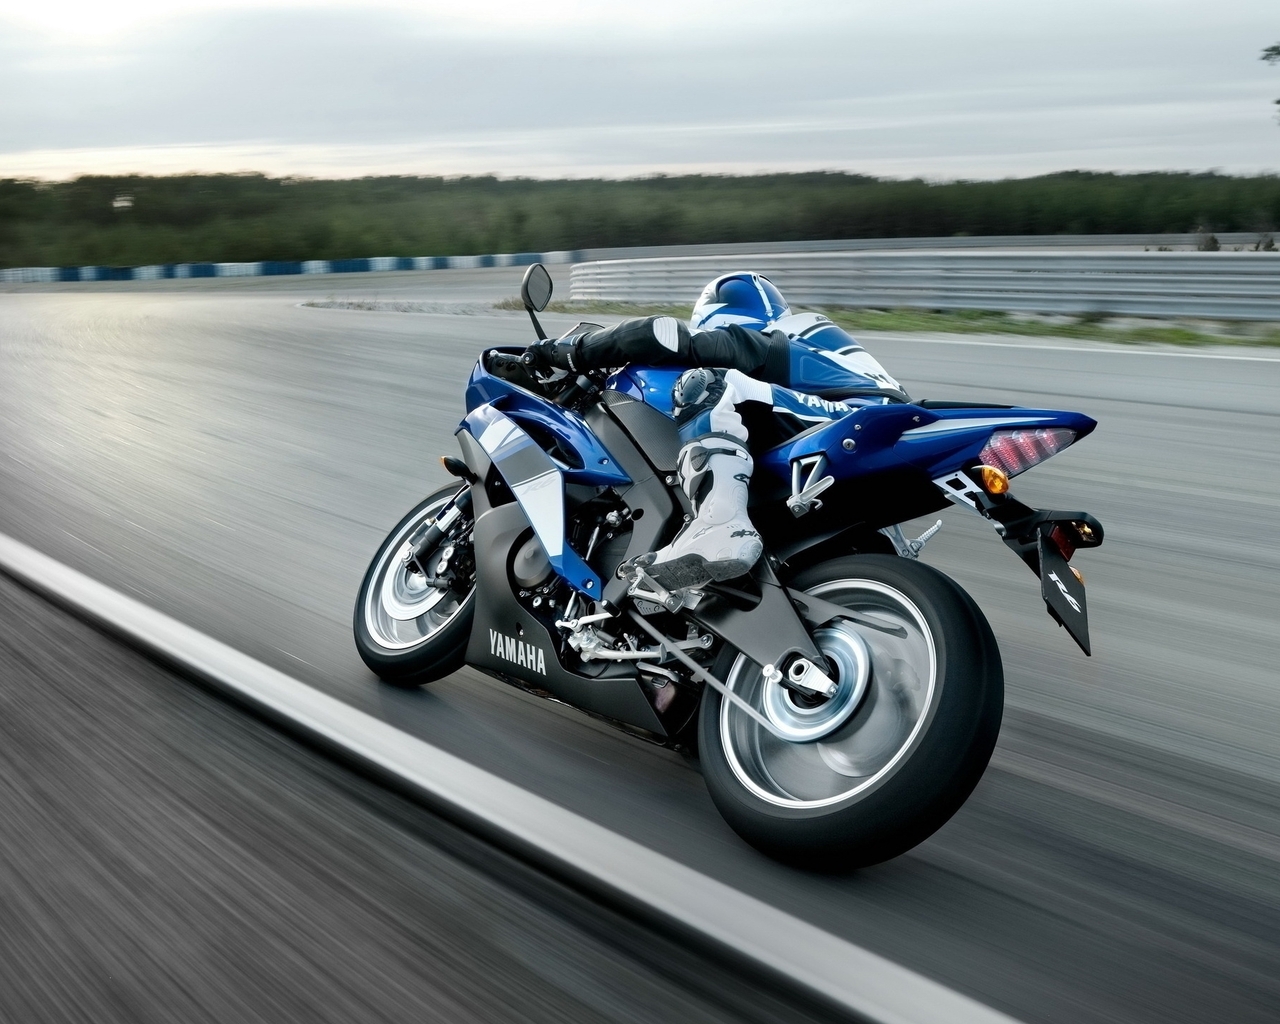 Картинка: Байк, Yamaha, скорость, поворот, гонщик, синий, размытость, трек, трасса